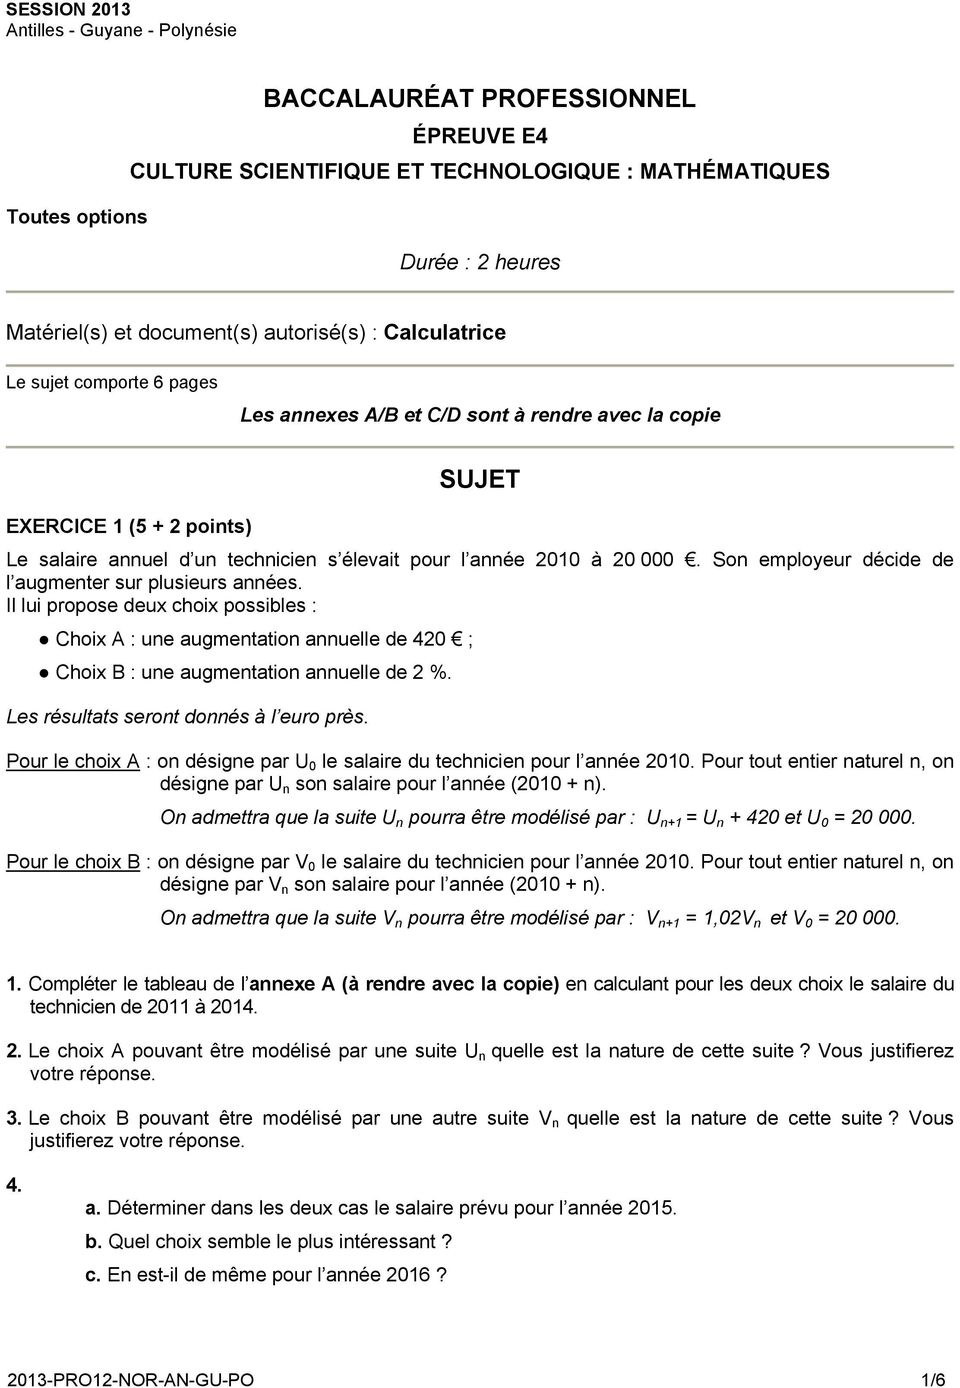 Sujet Bac Pro Maths 2020 Corrigé BACCALAURÉAT PROFESSIONNEL SUJET - PDF Free Download